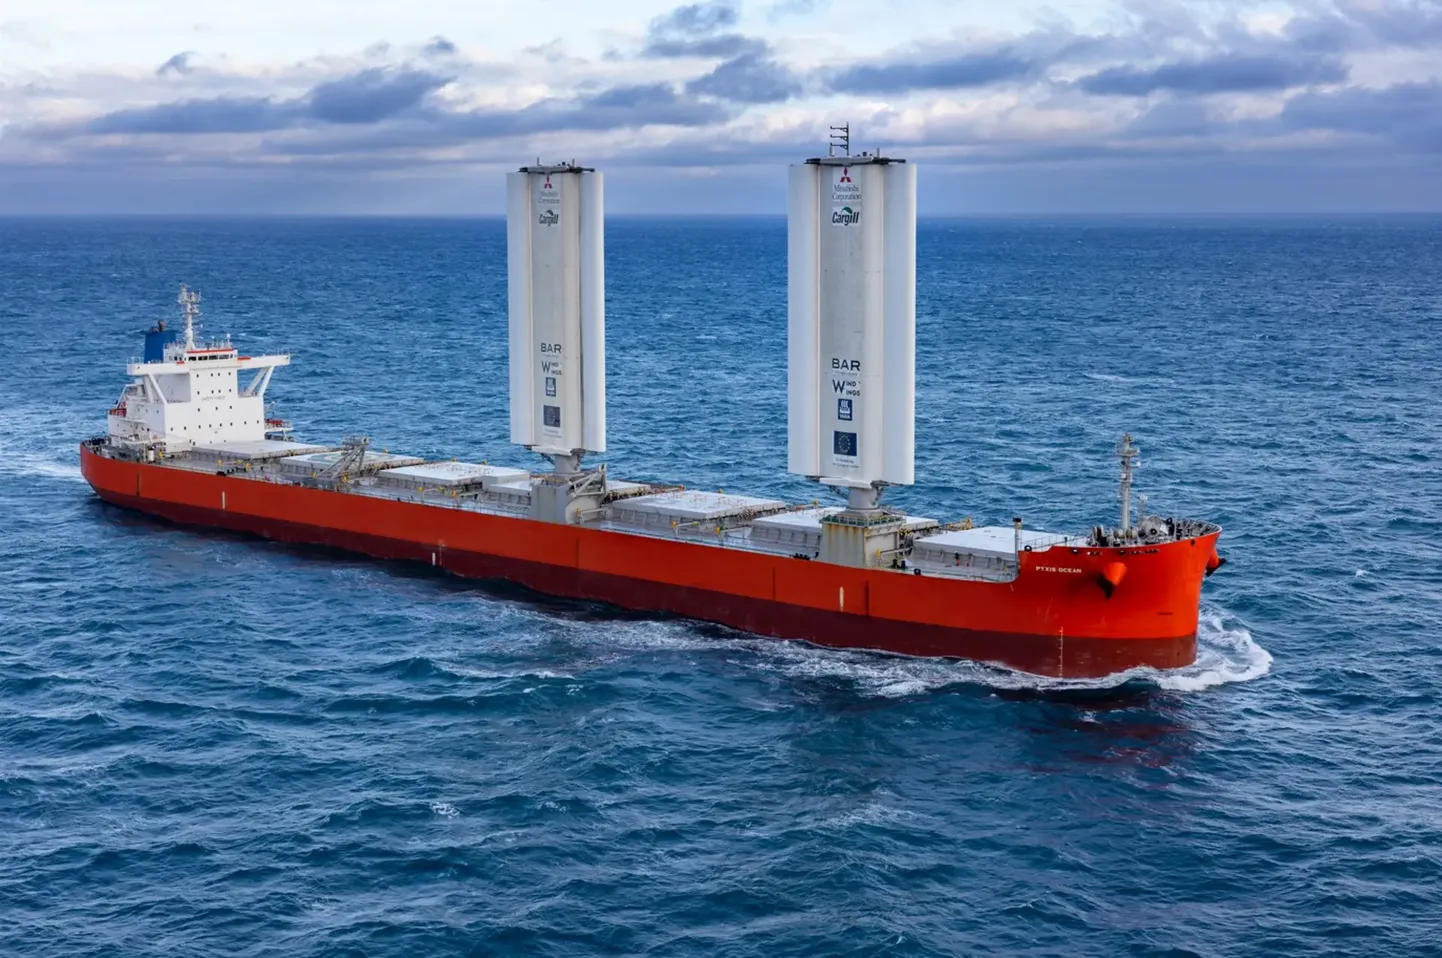 Automaatpurjesüsteem WindWings võimaldab Pyxis Oceanil säästa päevas kolm tonni kütust, vähendades süsinikdioksiidi heitmeid 11,2 tonni võrra ja saavutada üldine kulude kokkuhoid 14 protsenti.